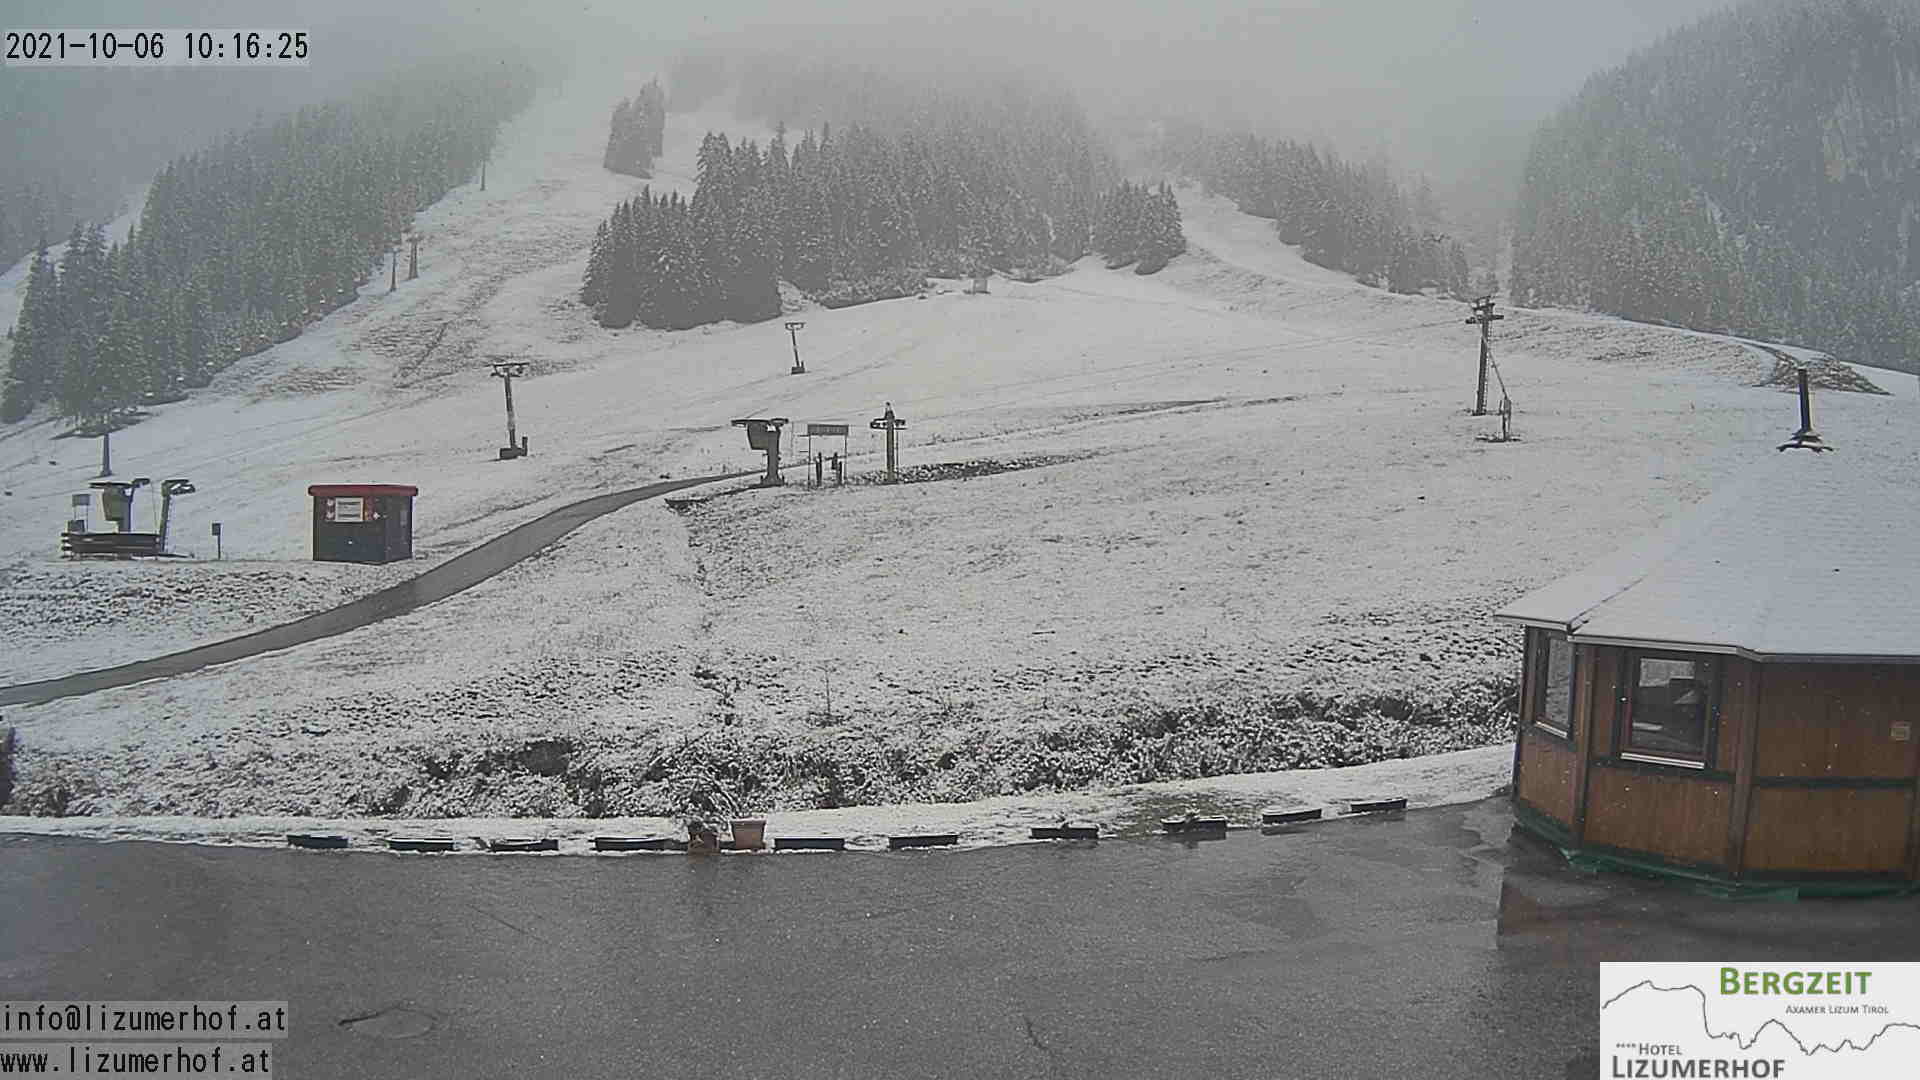 Alpen: Koufrontpassage zorgt voor regen en sneeuw